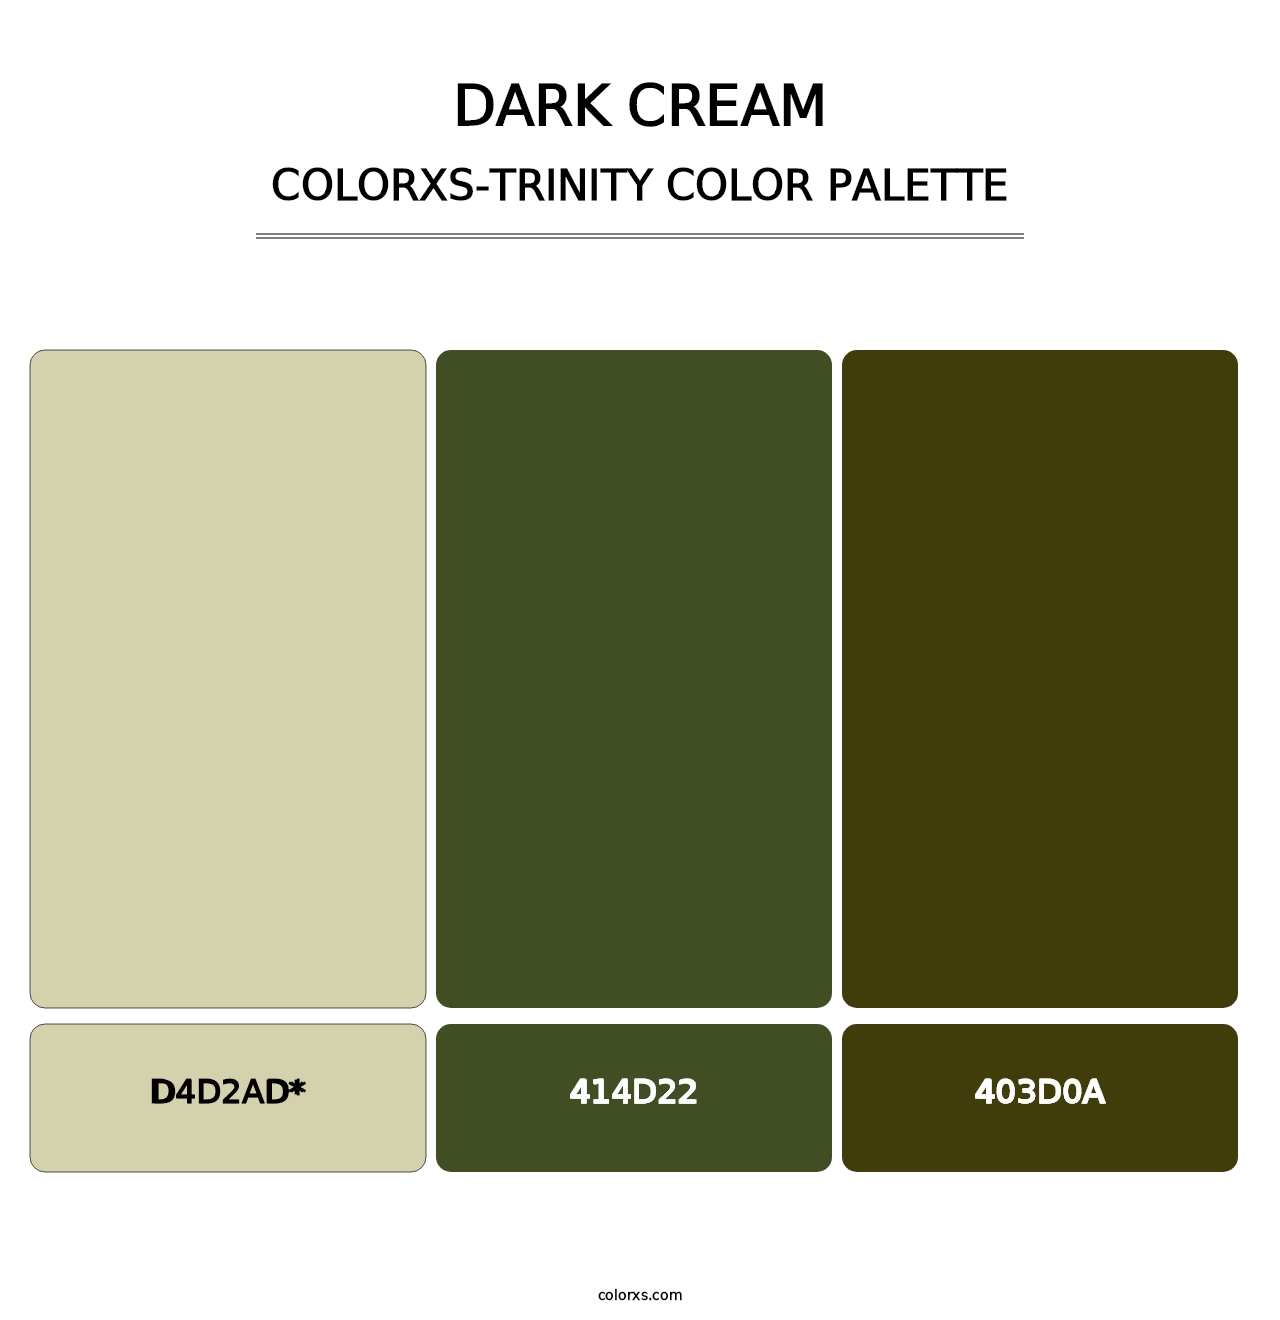 Dark Cream - Colorxs Trinity Palette